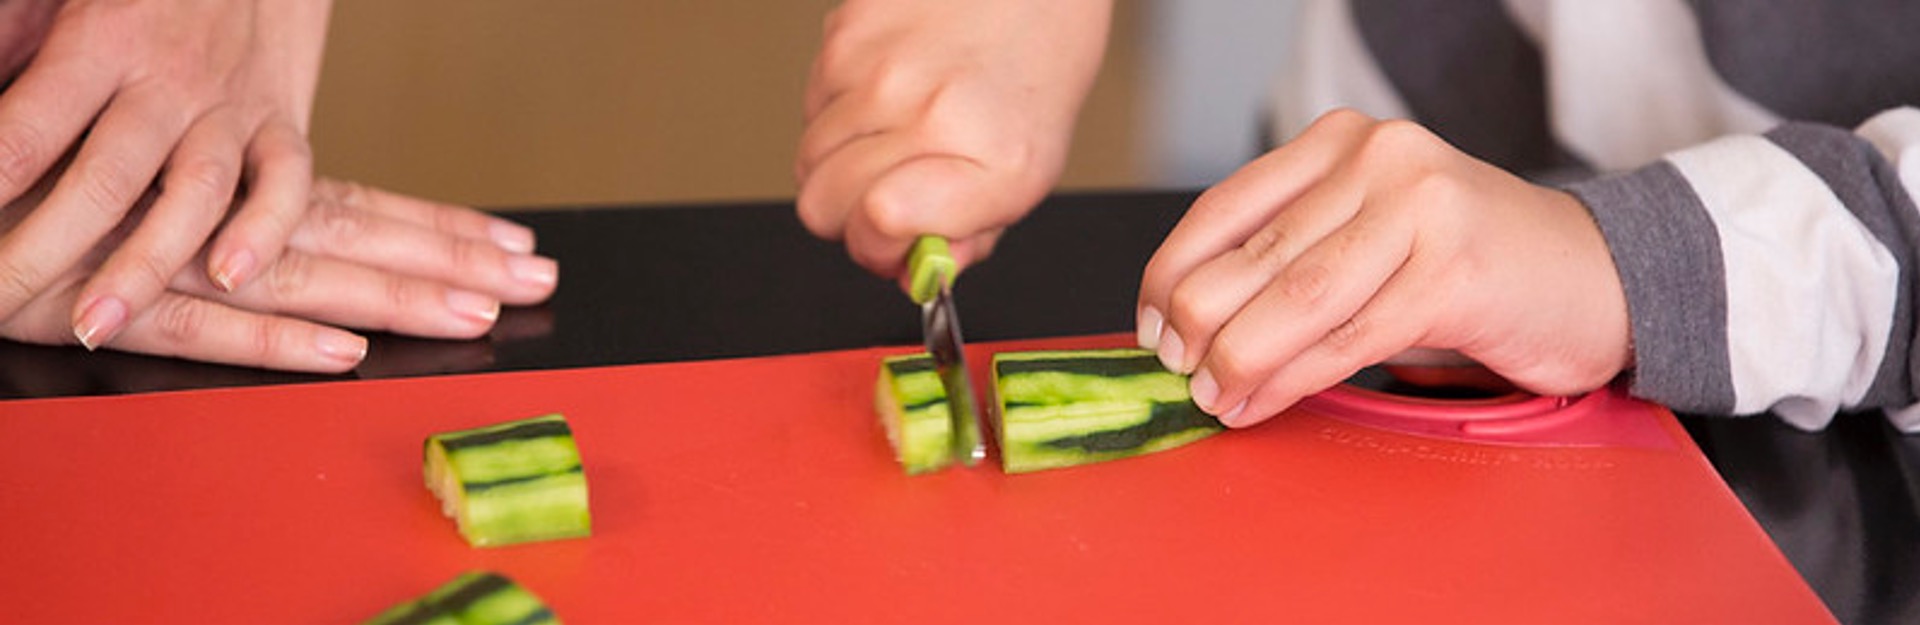 close up of hands cutting a cucumber